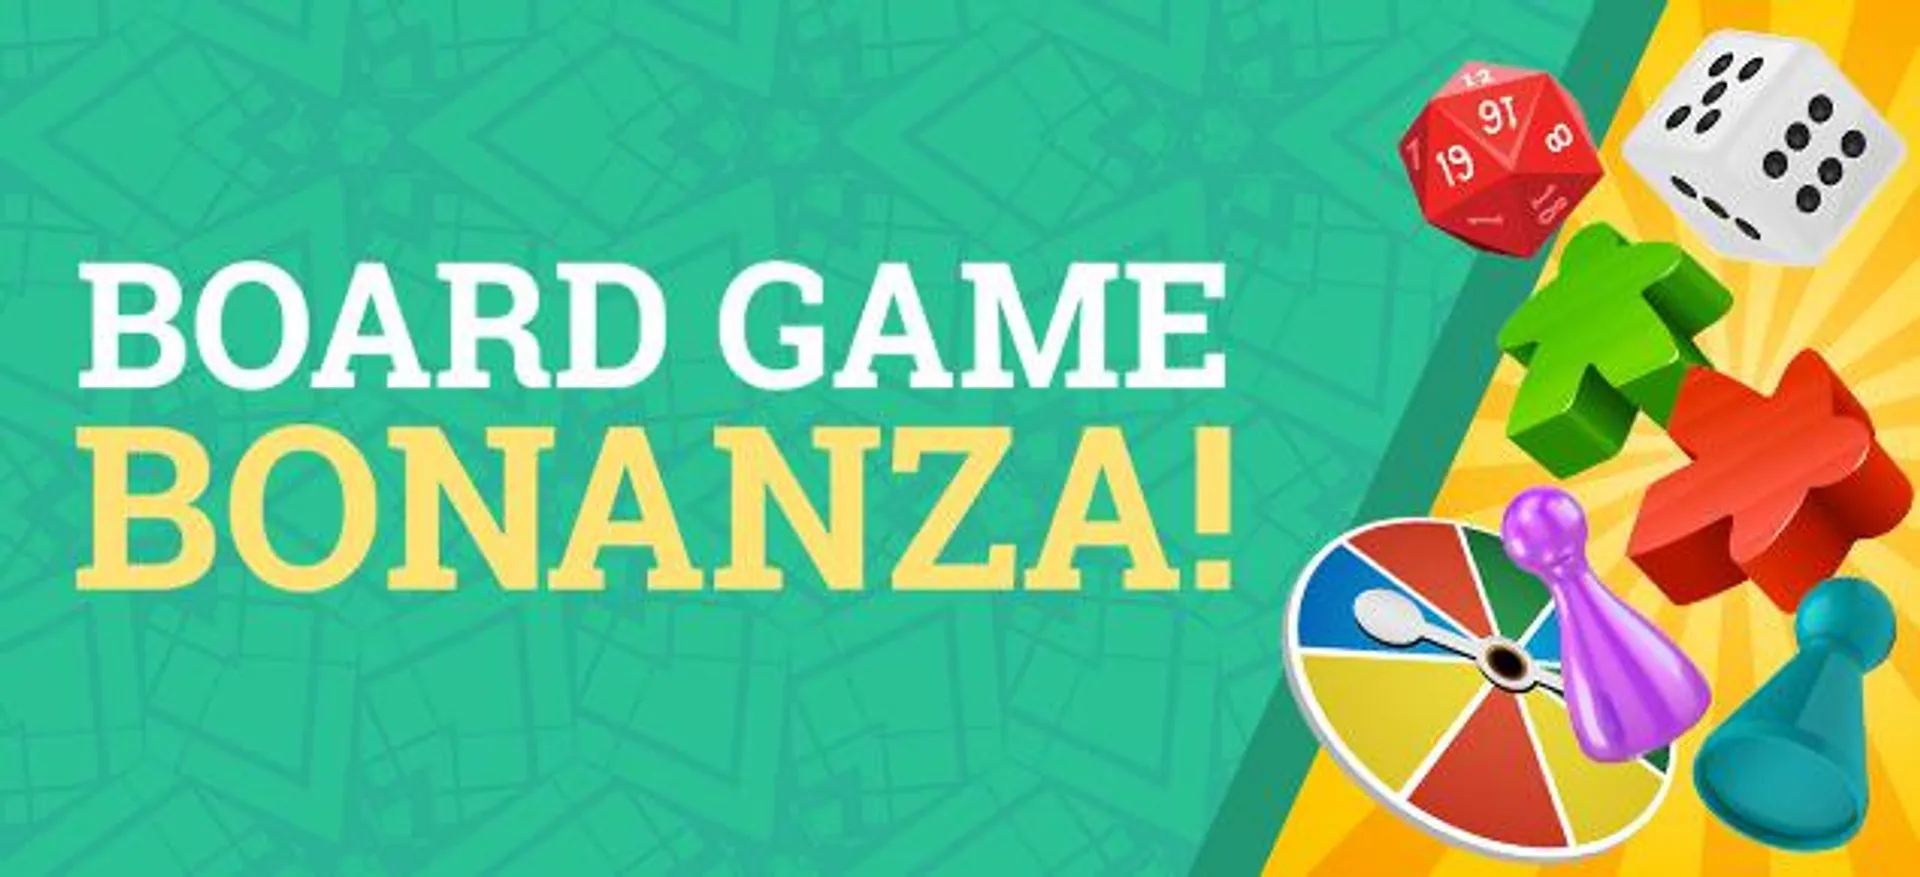 Board Game Bonanza Sale!